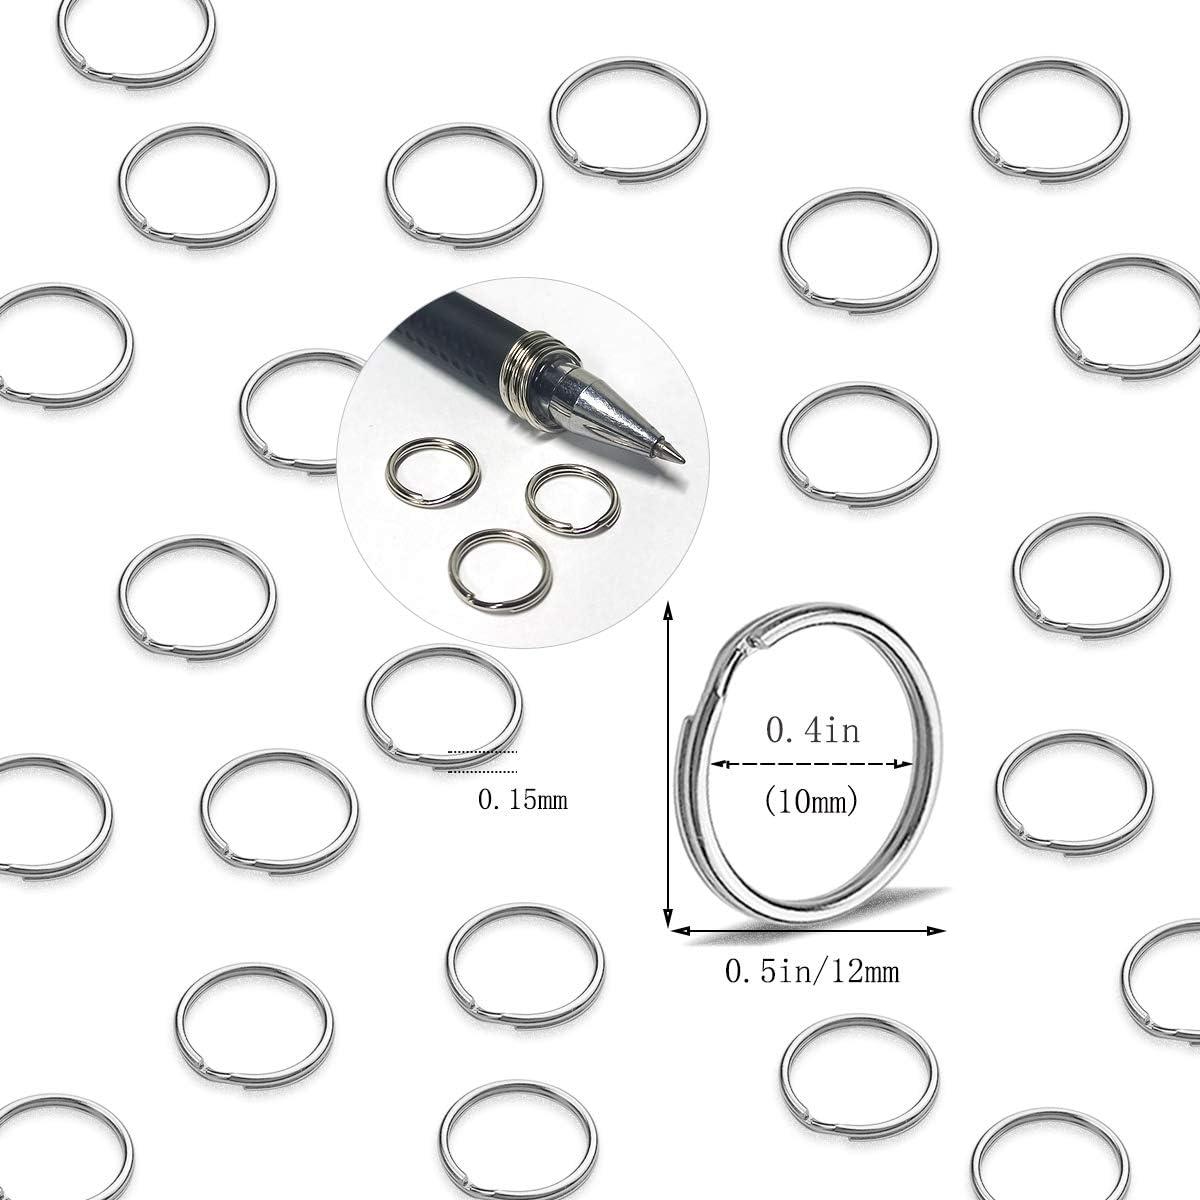 1, 25mm Popular Size Easy Open Metal Steel Key Rings 